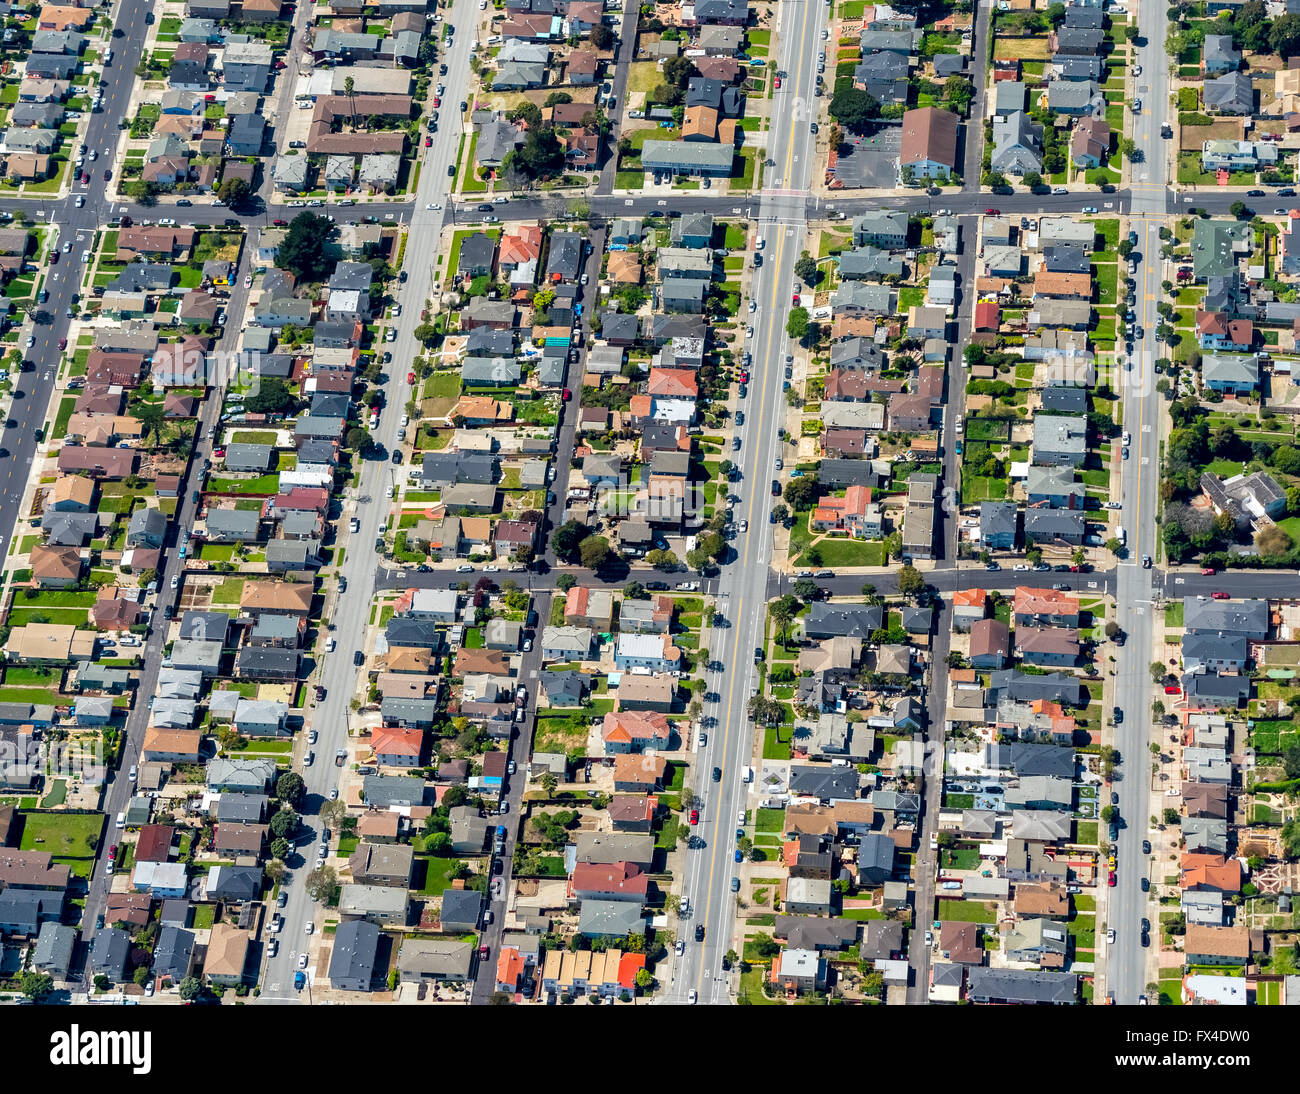 Vue aérienne, quartier résidentiel américain typique, maisons jumelées, San Jose, San Francisco, États-Unis d'Amérique Banque D'Images